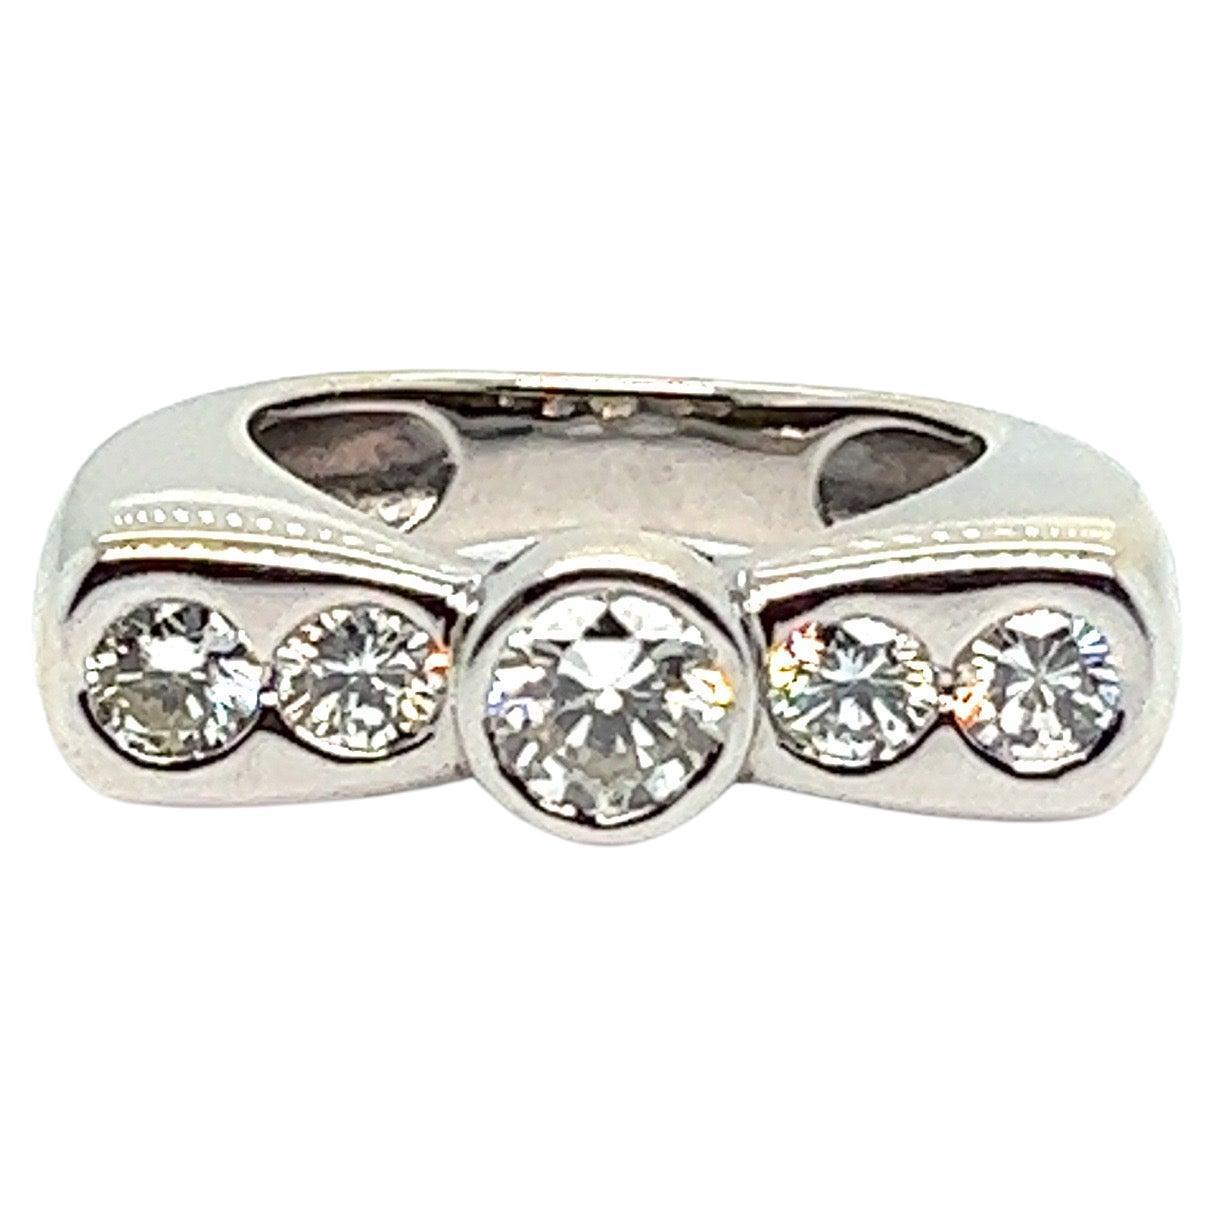 French Knot Ring  5 Diamonds 1.8 Karat White Gold 18 Karat